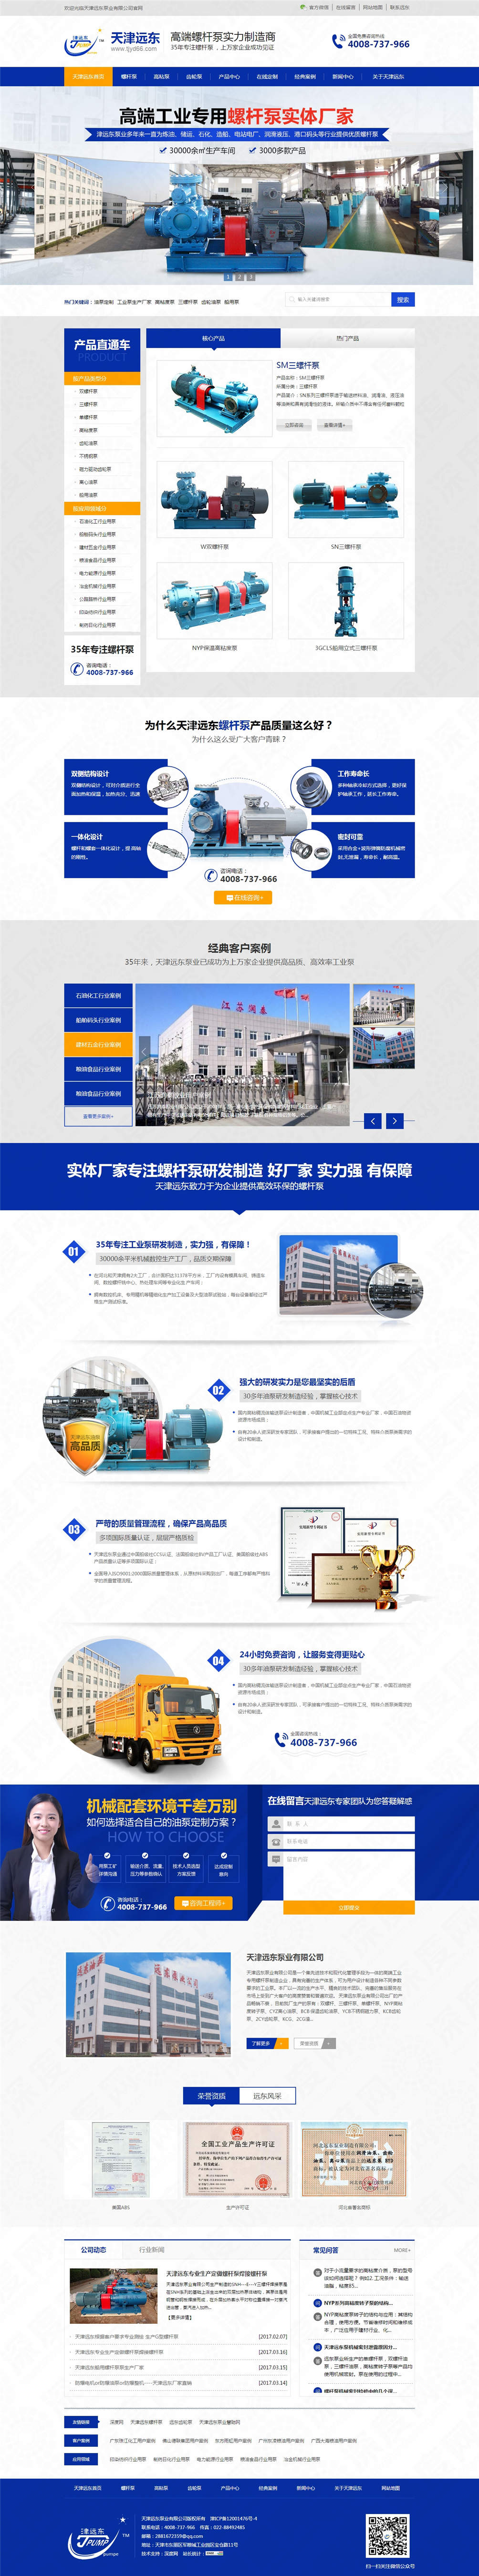 天津远东泵业营销型网站建设案例